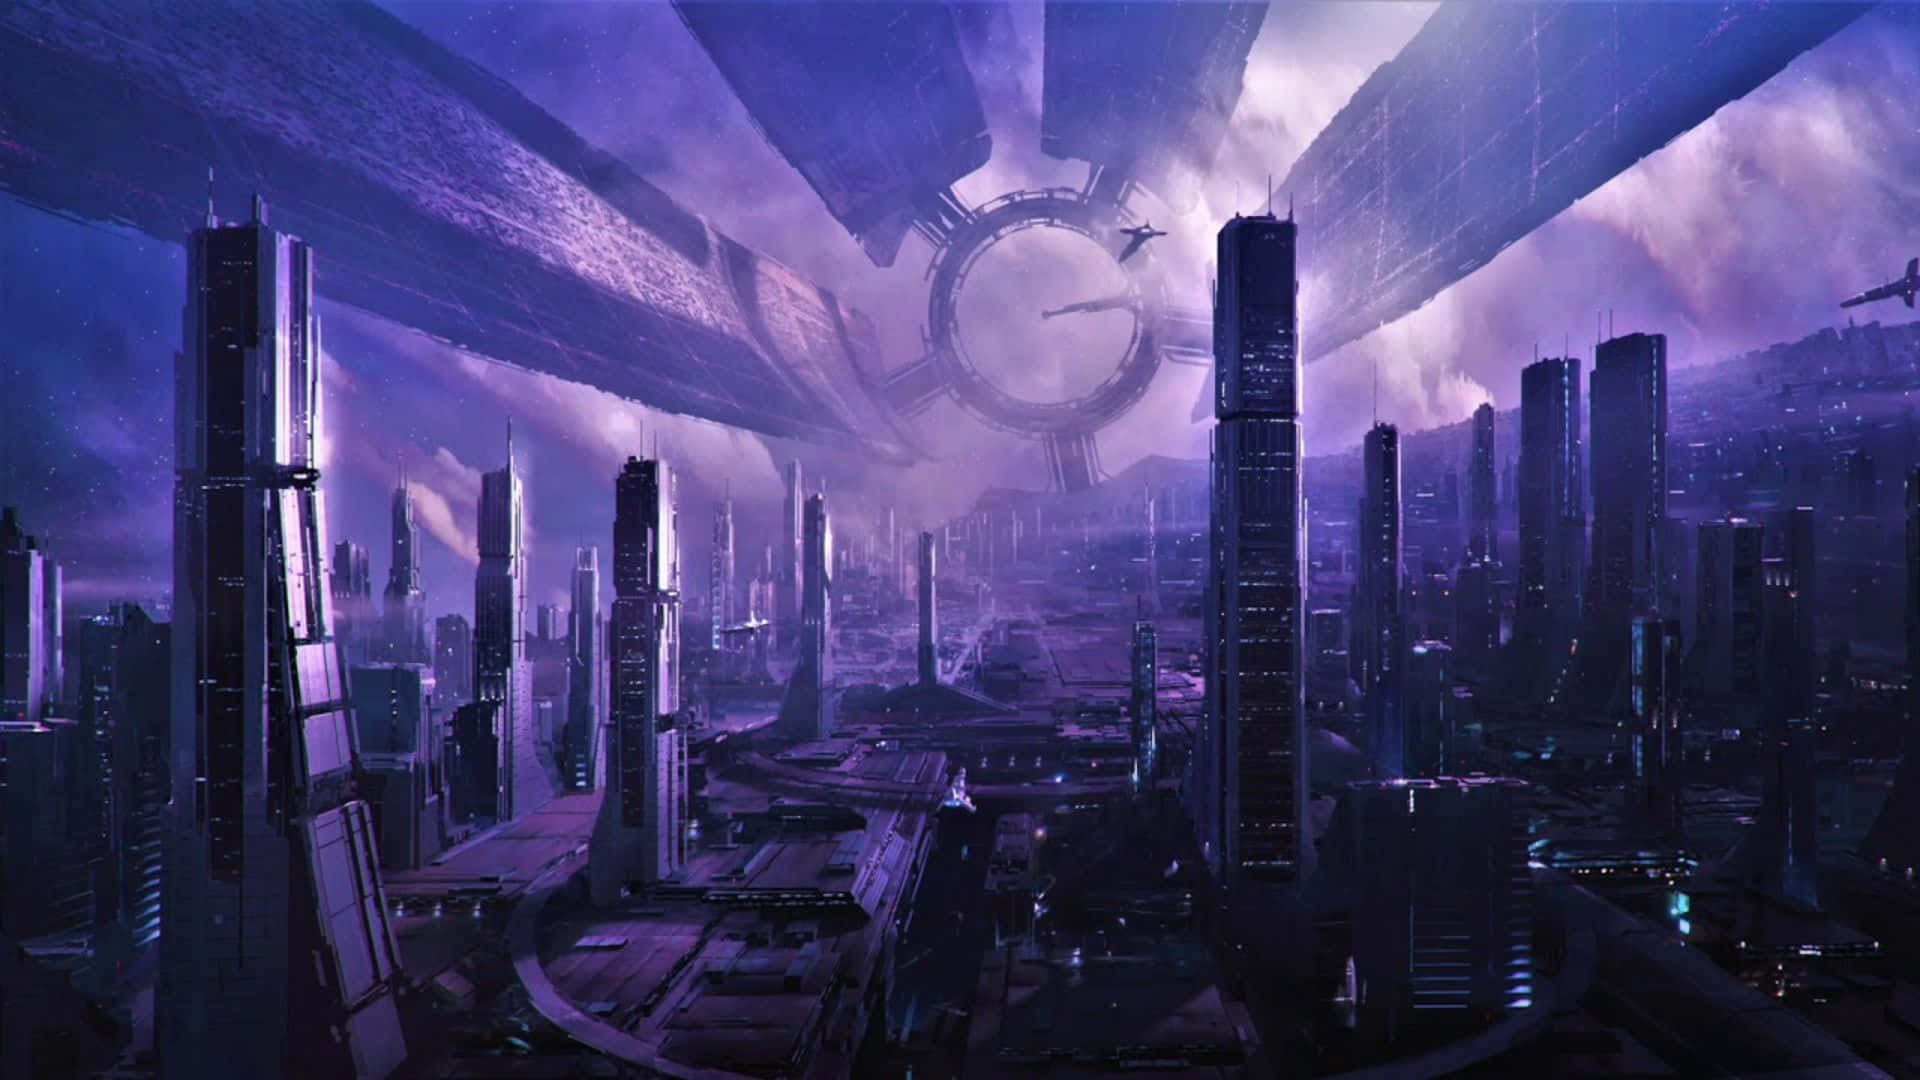 Impresionantevista De La Ciudadela De Mass Effect Iluminada Por La Noche. Fondo de pantalla